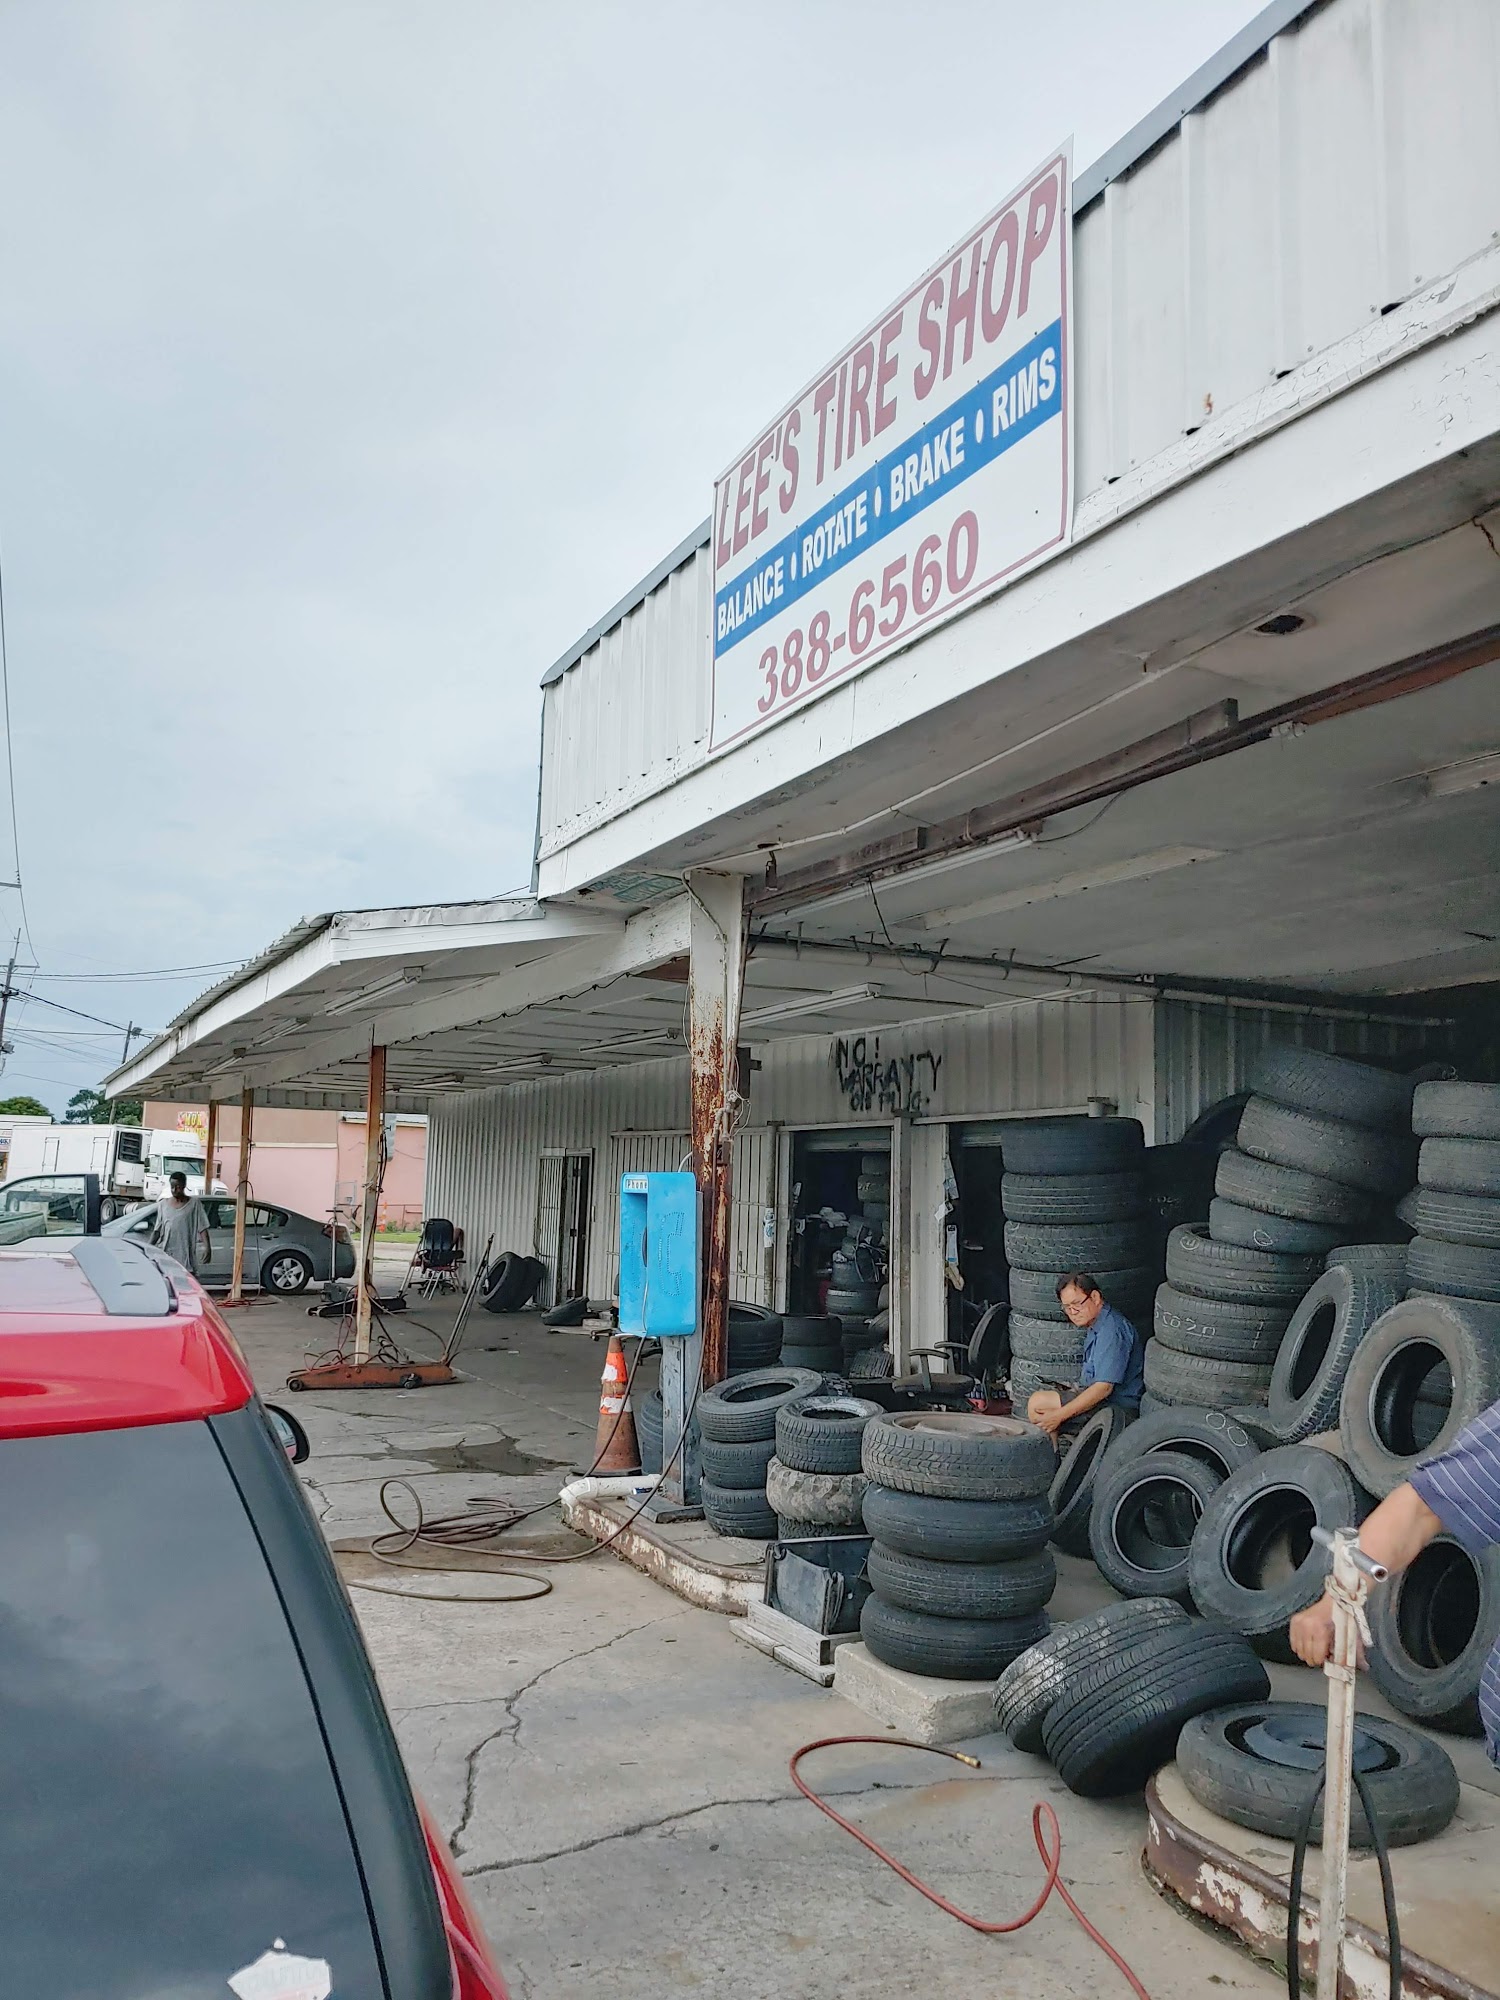 Lee's Tire Shop